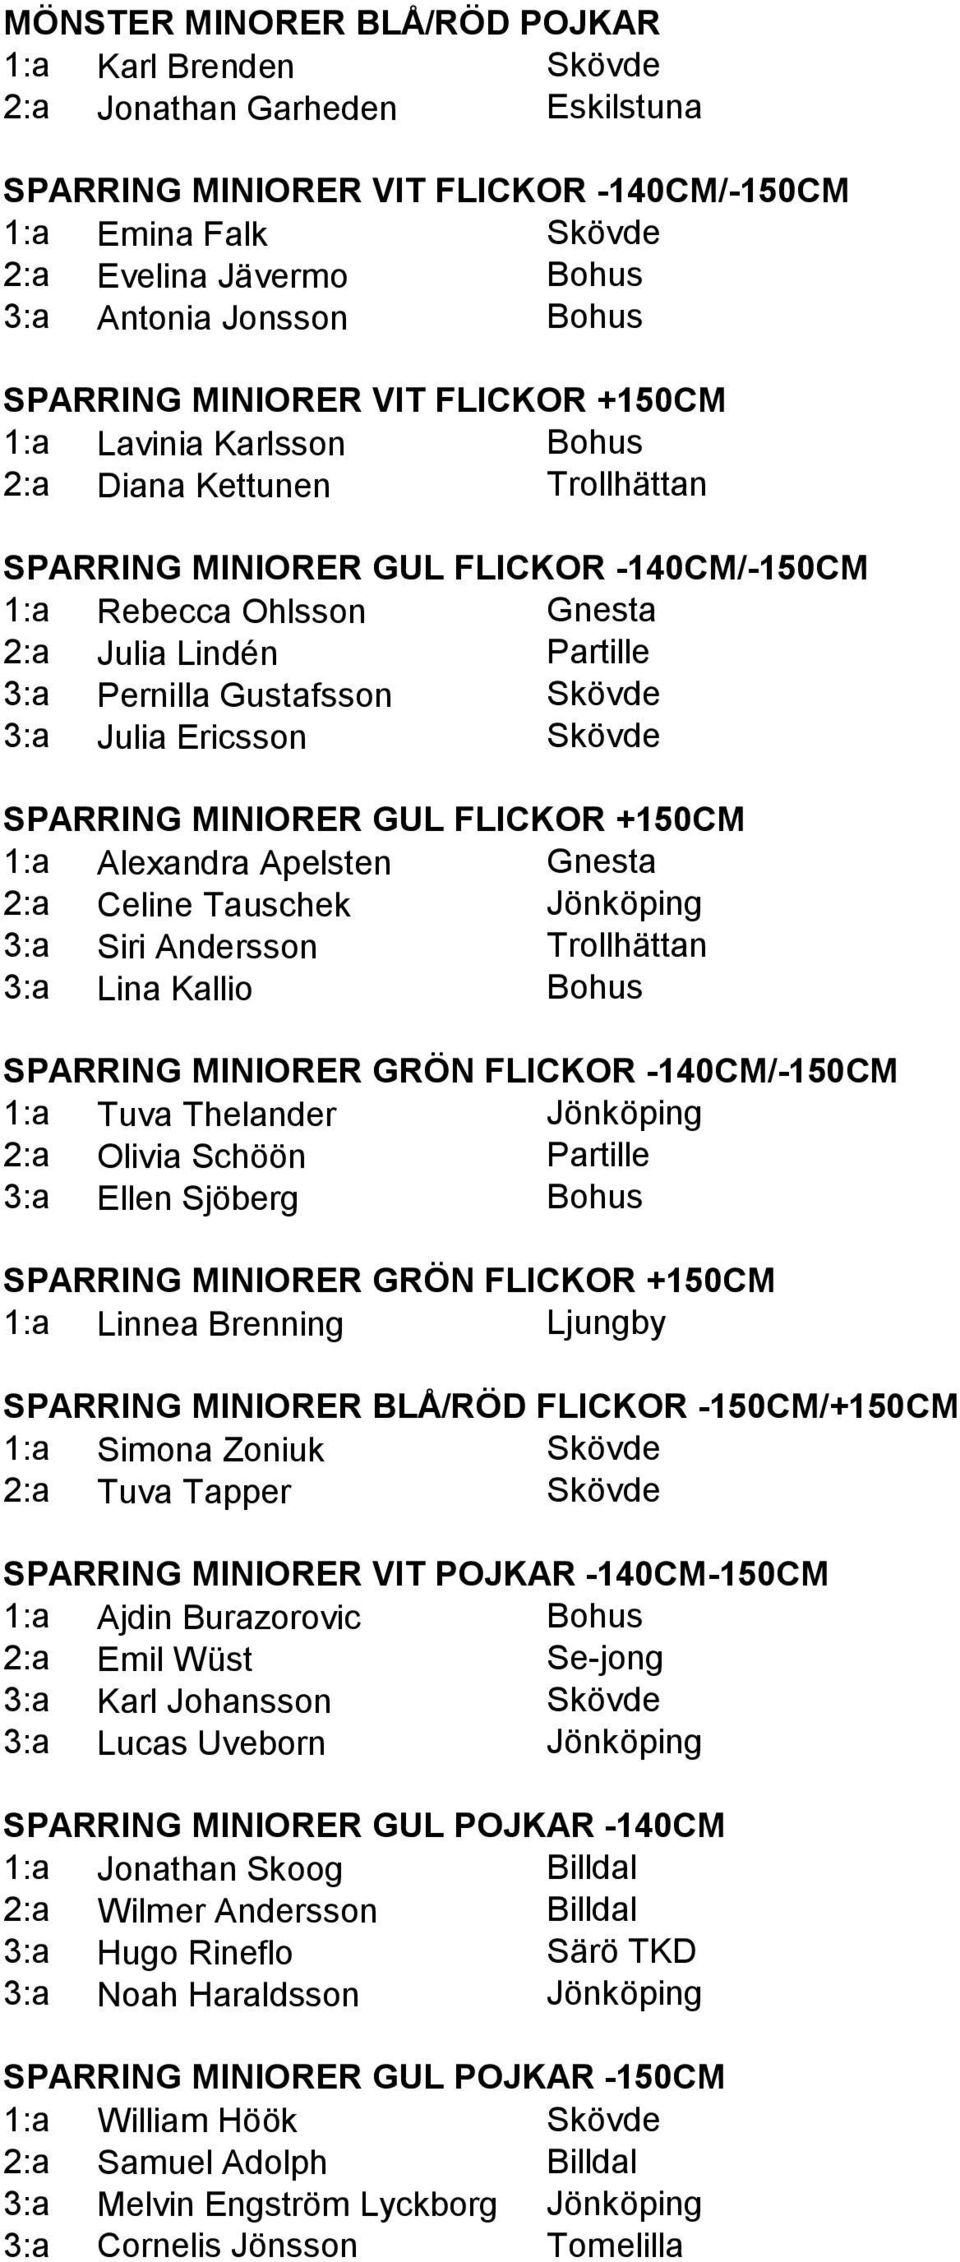 3:a Pernilla Gustafsson Skövde 3:a Julia Ericsson Skövde SPARRING MINIORER GUL FLICKOR +150CM 1:a Alexandra Apelsten Gnesta 2:a Celine Tauschek Jönköping 3:a Siri Andersson Trollhättan 3:a Lina